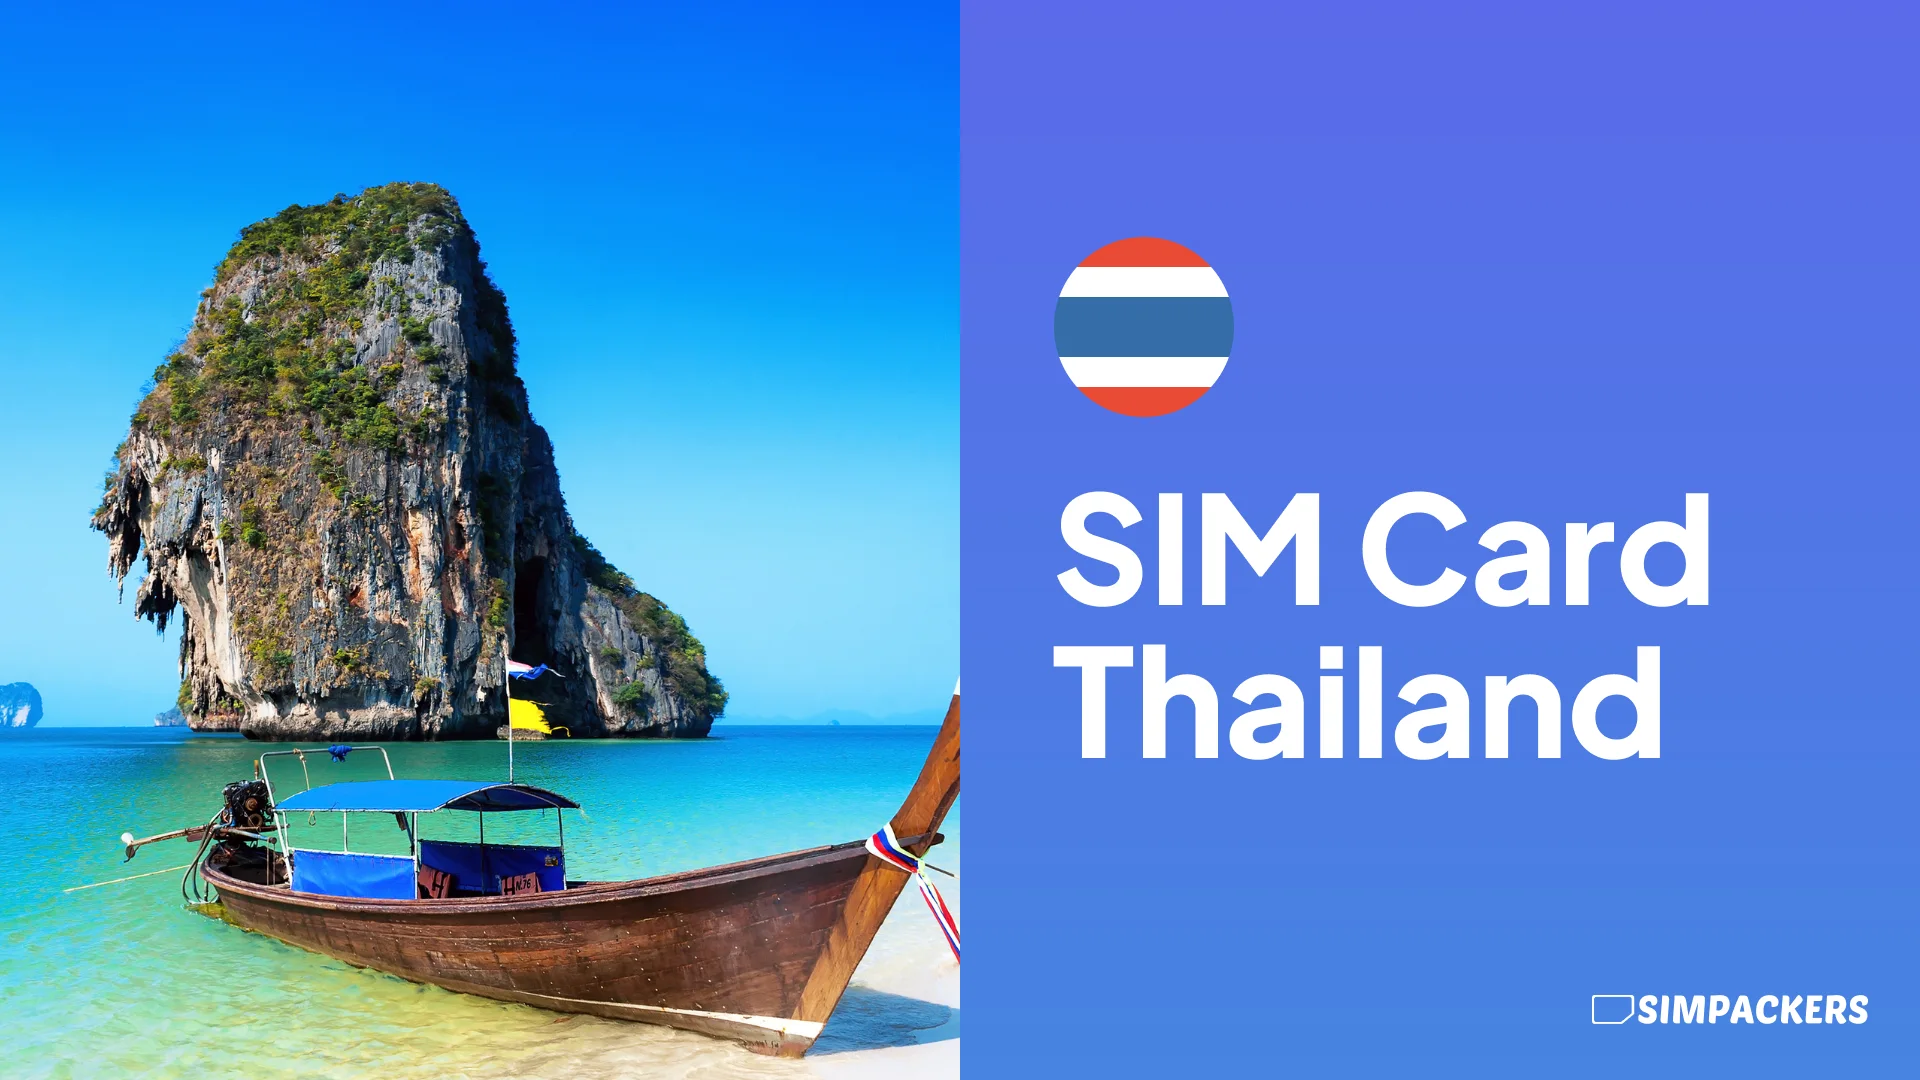 EN/FEATURED_IMAGES/sim-card-thailand.webp